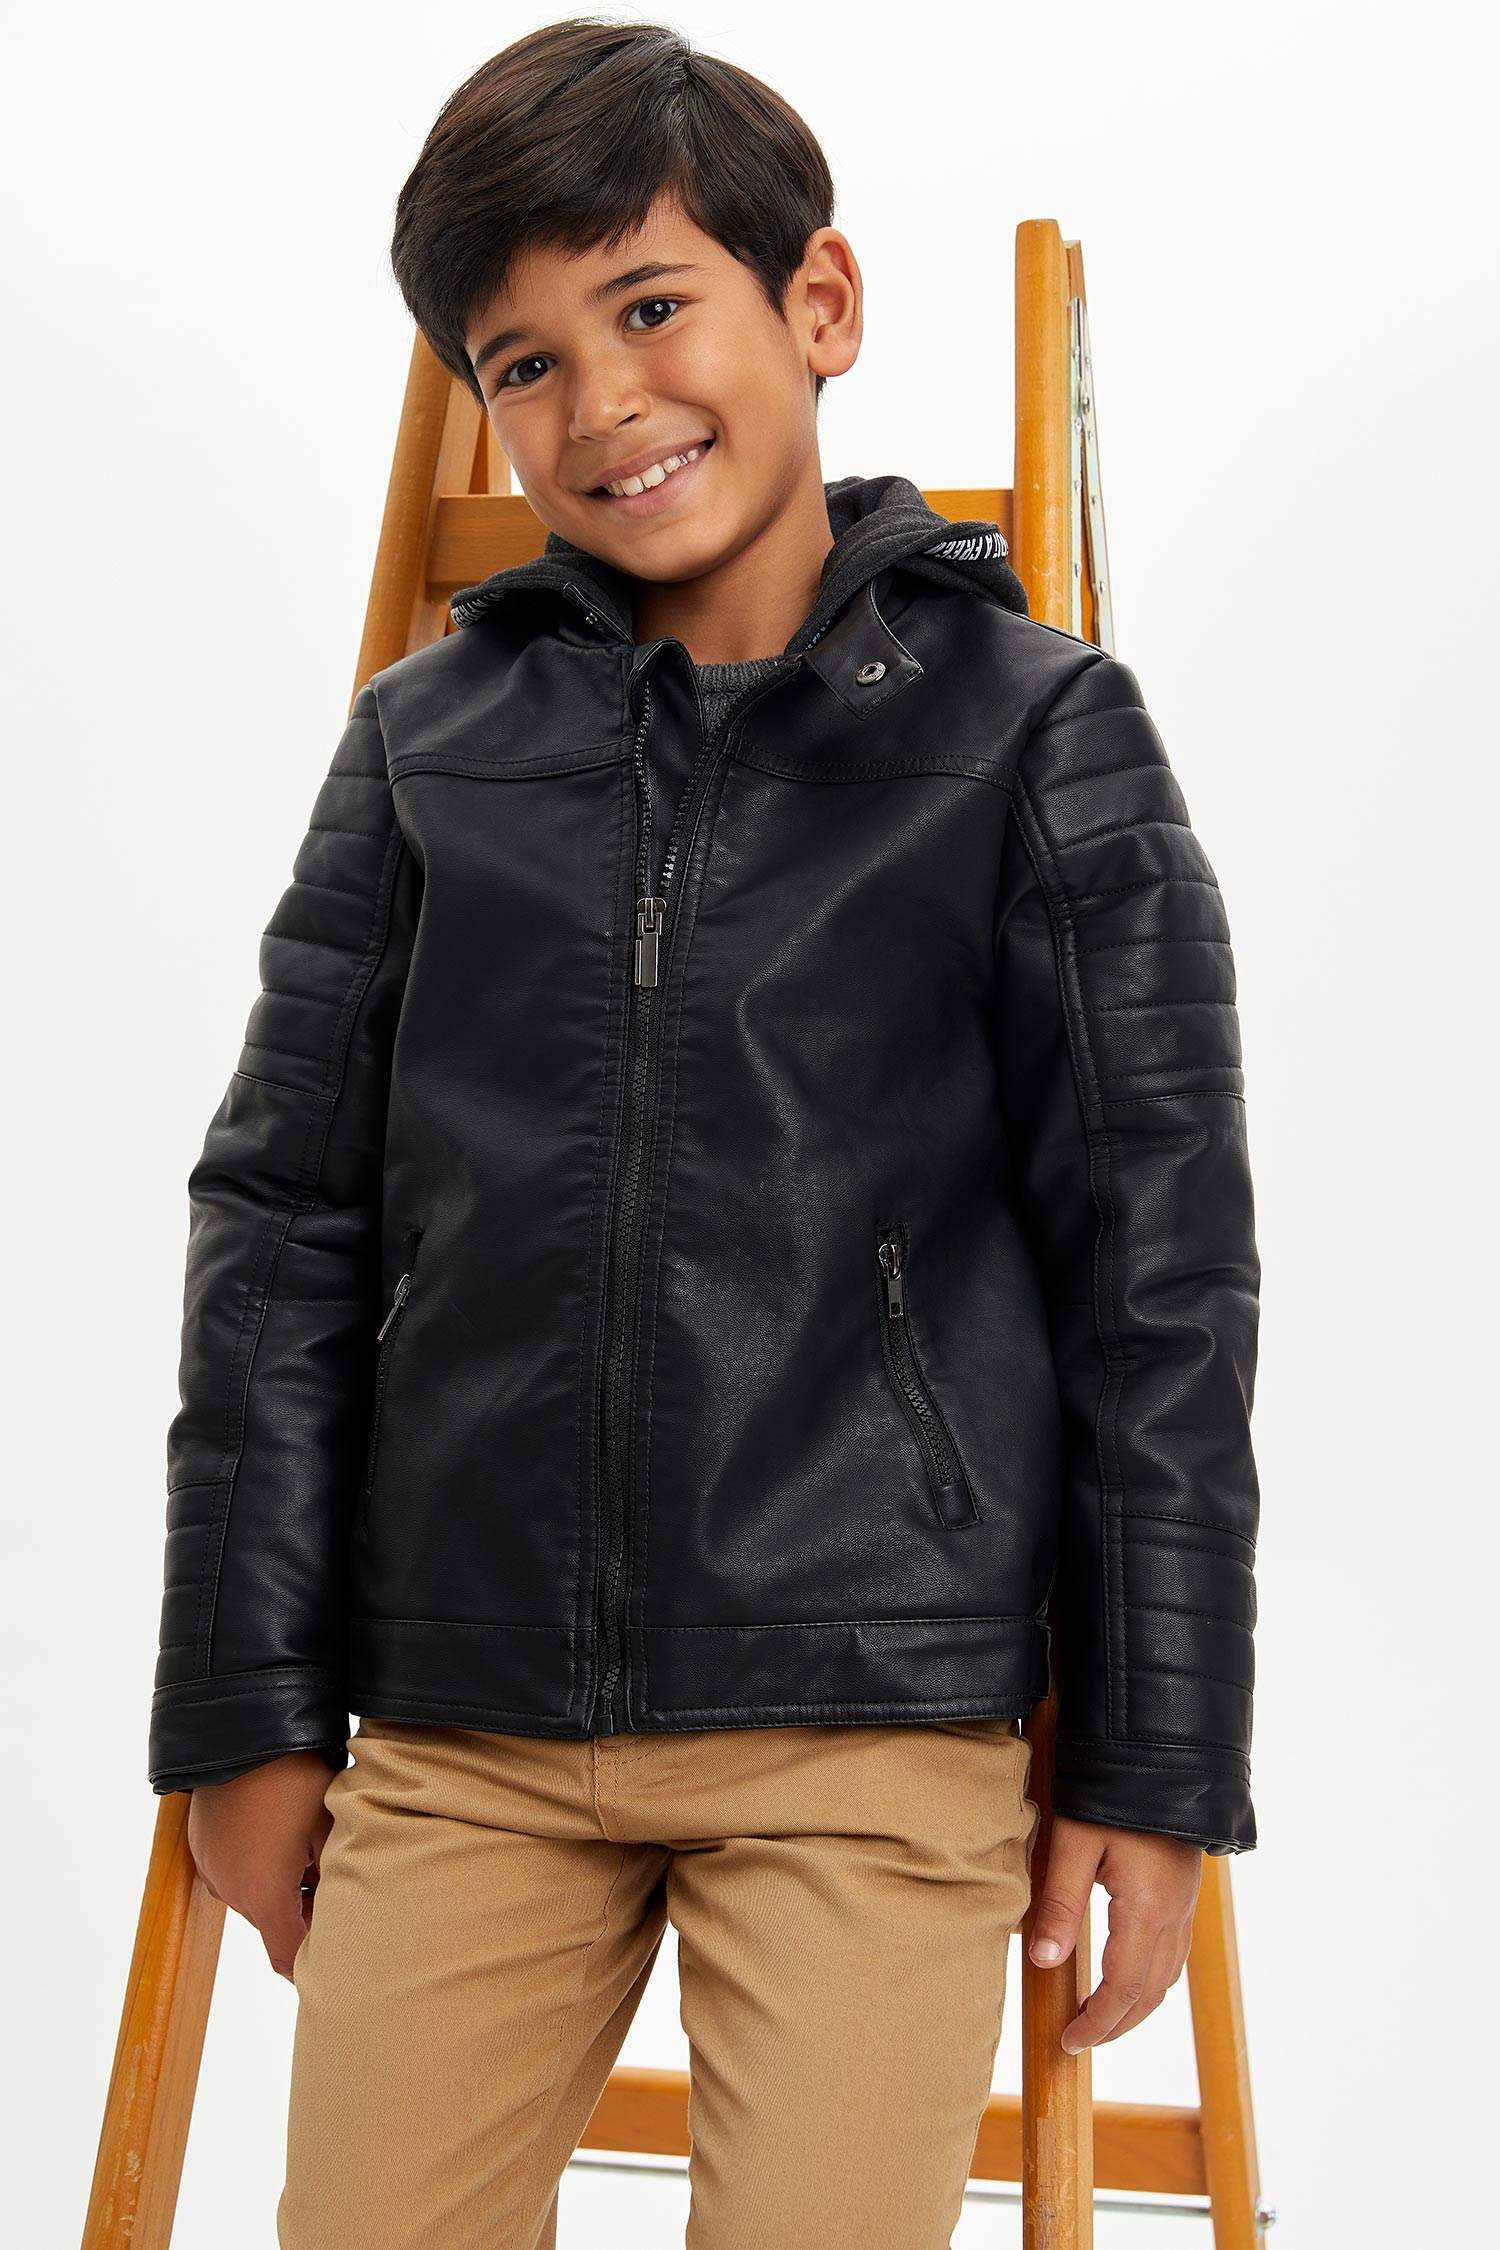 Arapça Rulman çemberi sosyal  Black BOYS & TEENS Boy Long Sleeve Faux Leather Jacket 1140536 | DeFacto